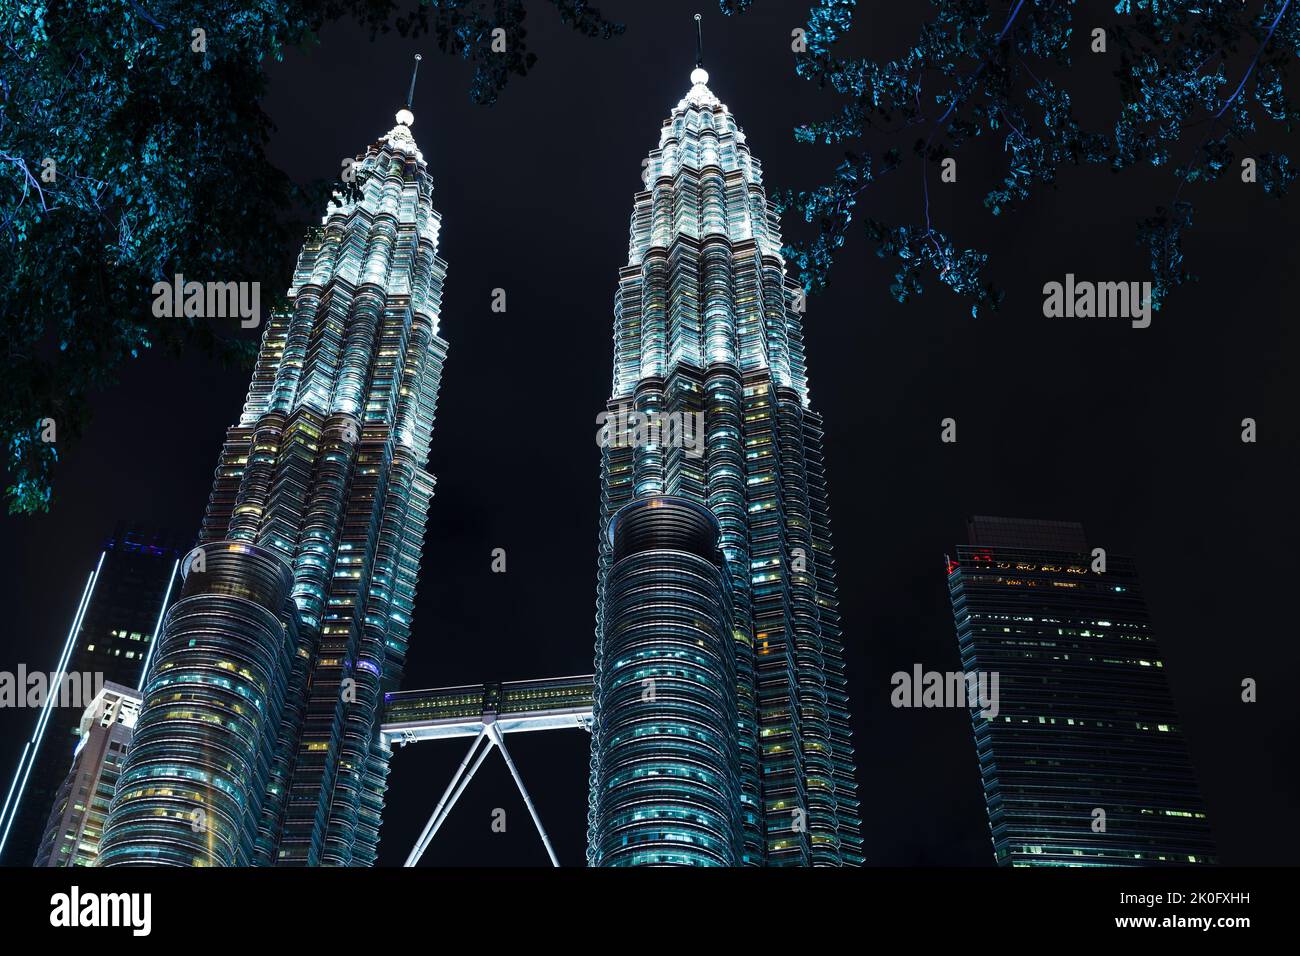 Kuala Lumpur, Malaisie - 28 novembre 2019: Tours jumelles Petronas la nuit. Les gratte-ciels éclairés sont sous le ciel sombre Banque D'Images